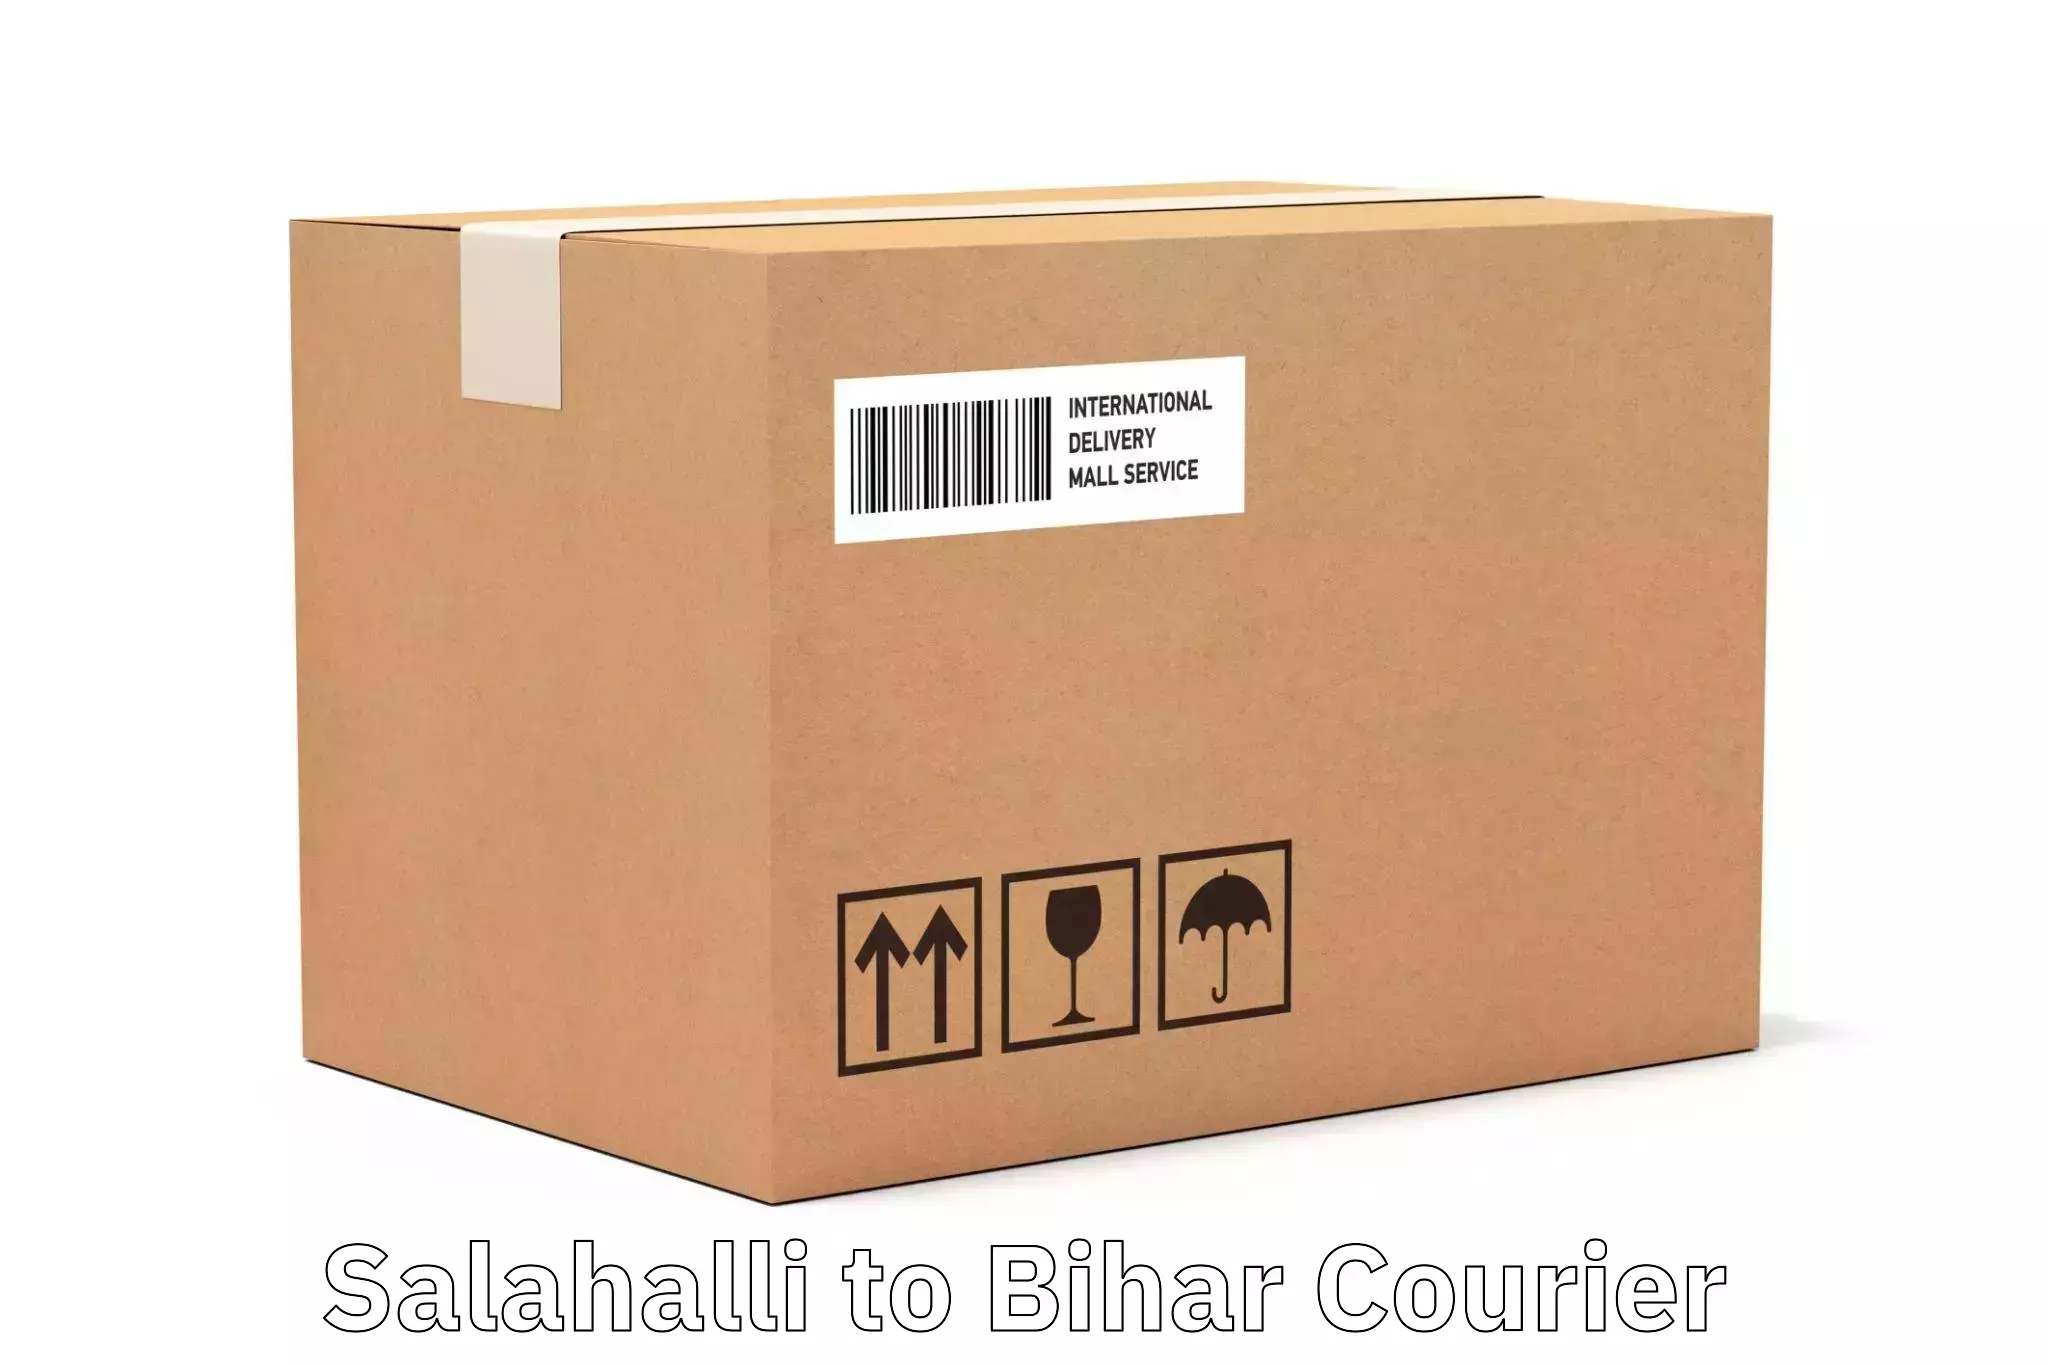 Cost-effective courier solutions Salahalli to Bihar